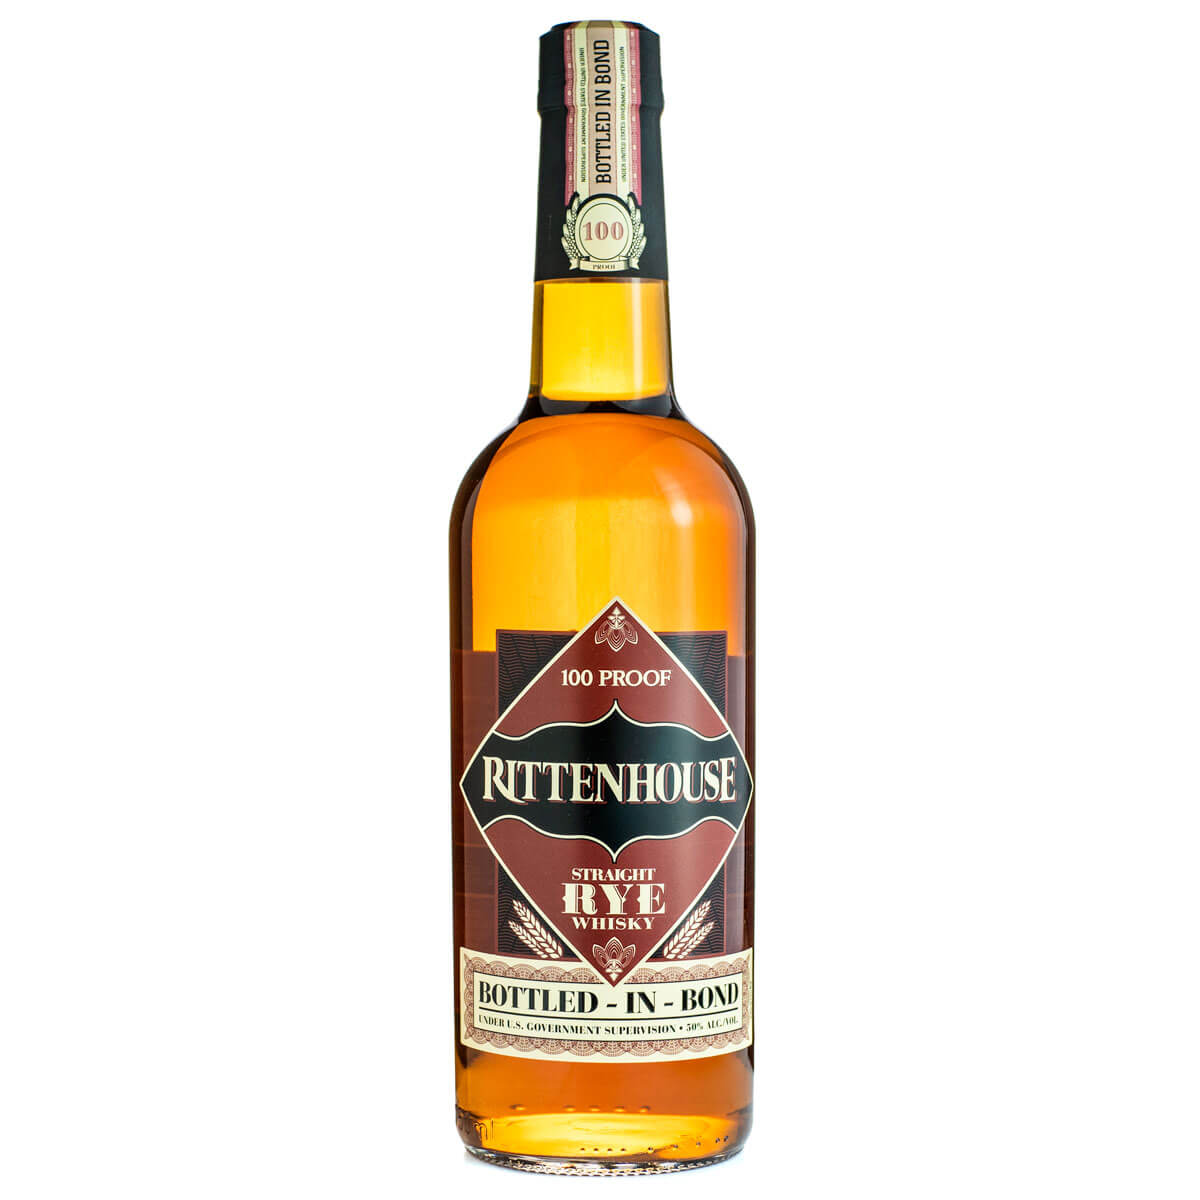 Rittenhouse Rye bottle